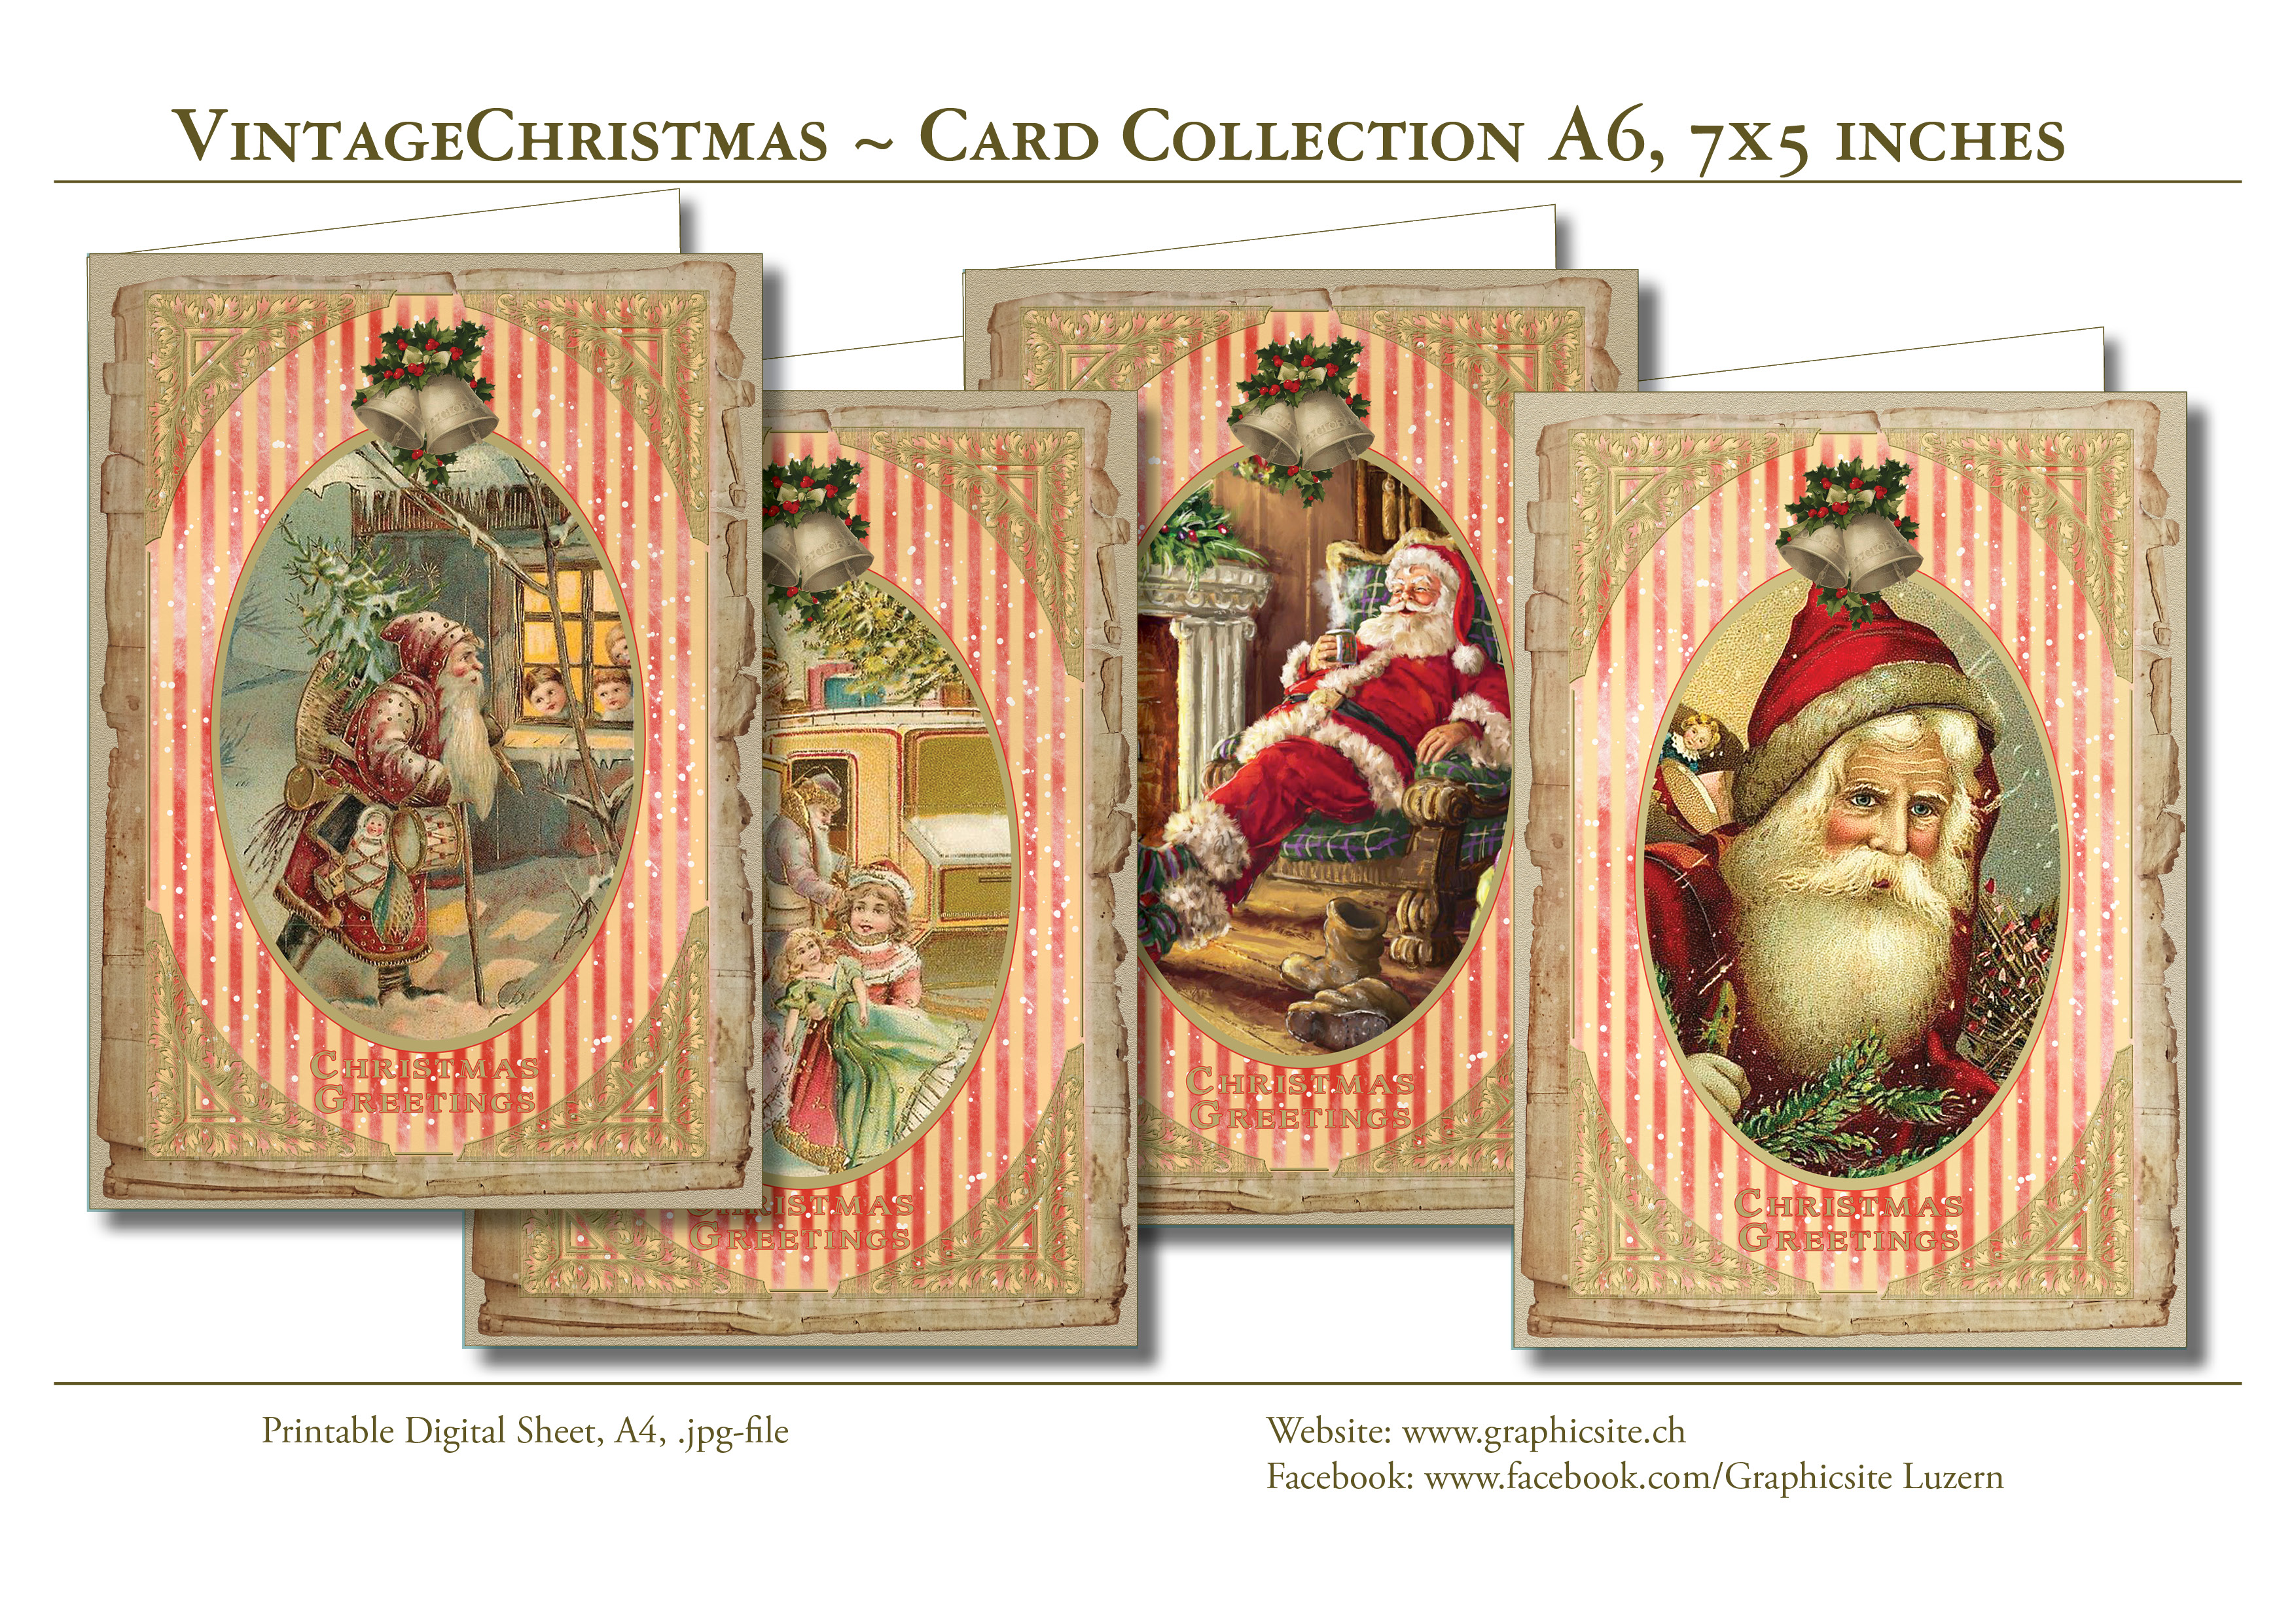 Printable Digital Sheets, download, Greeting Cards, Christmas, Holidays, Season, Santa Claus, 